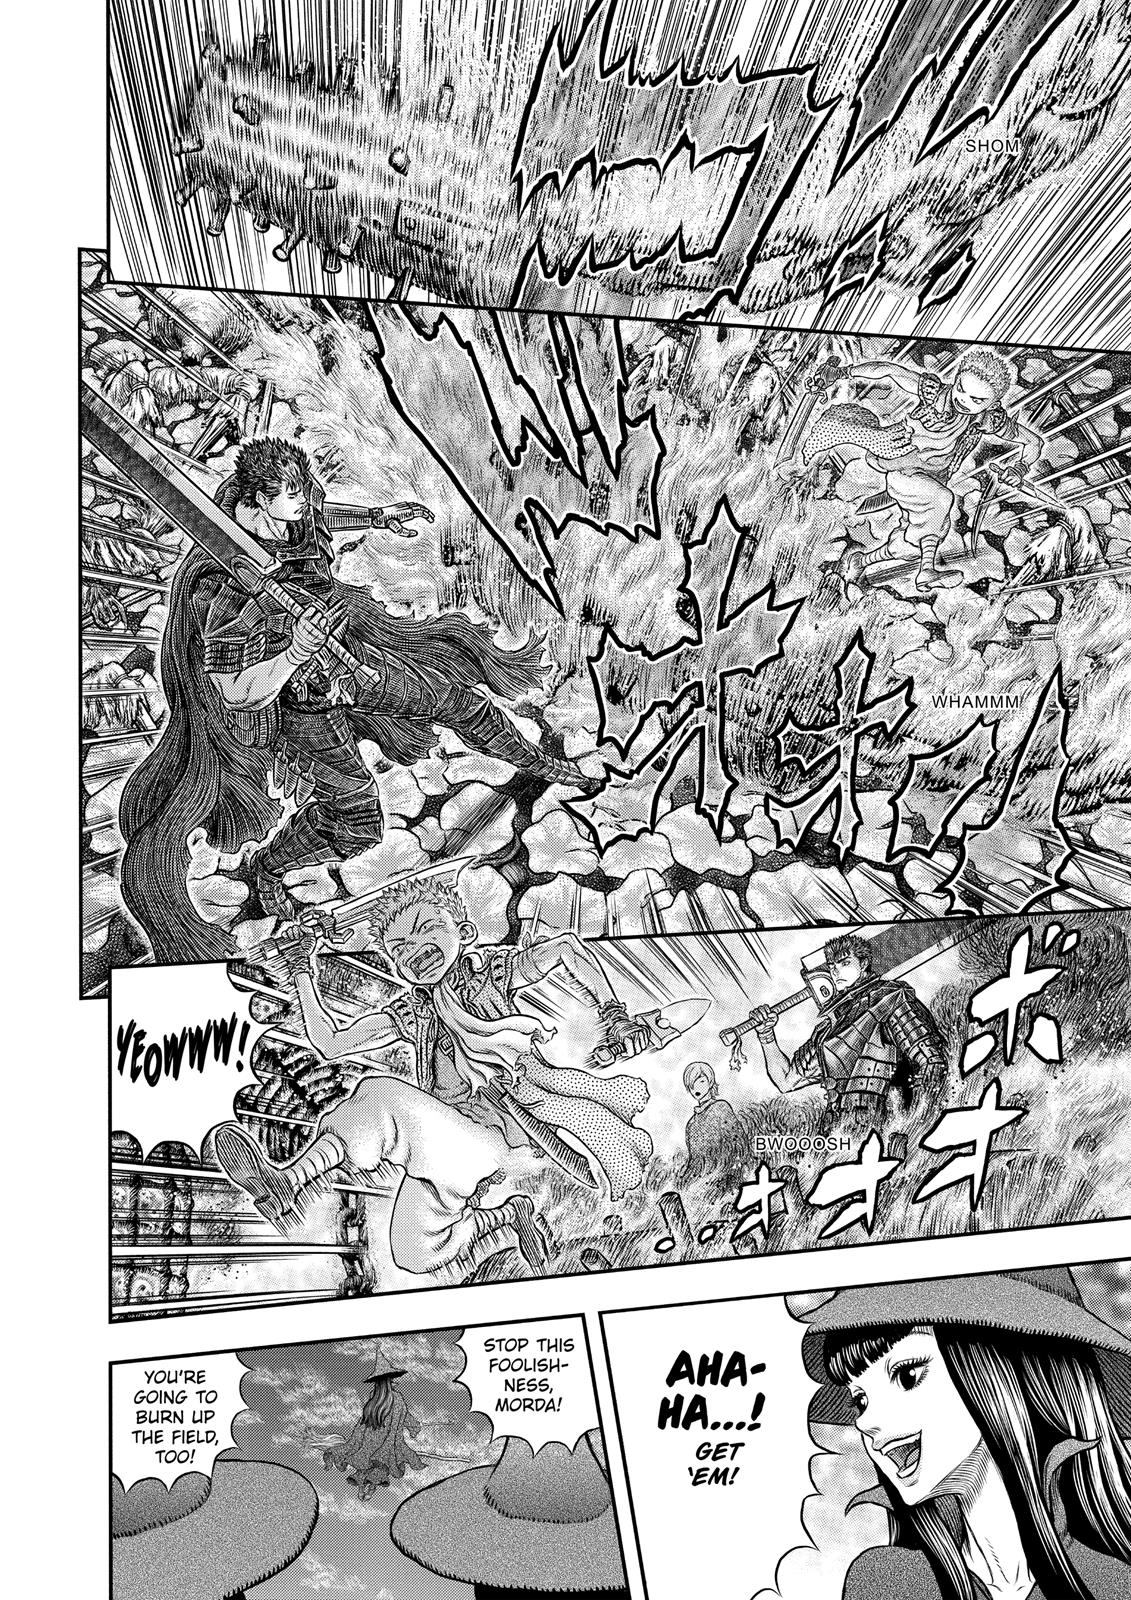 Berserk Manga Chapter 343 image 26